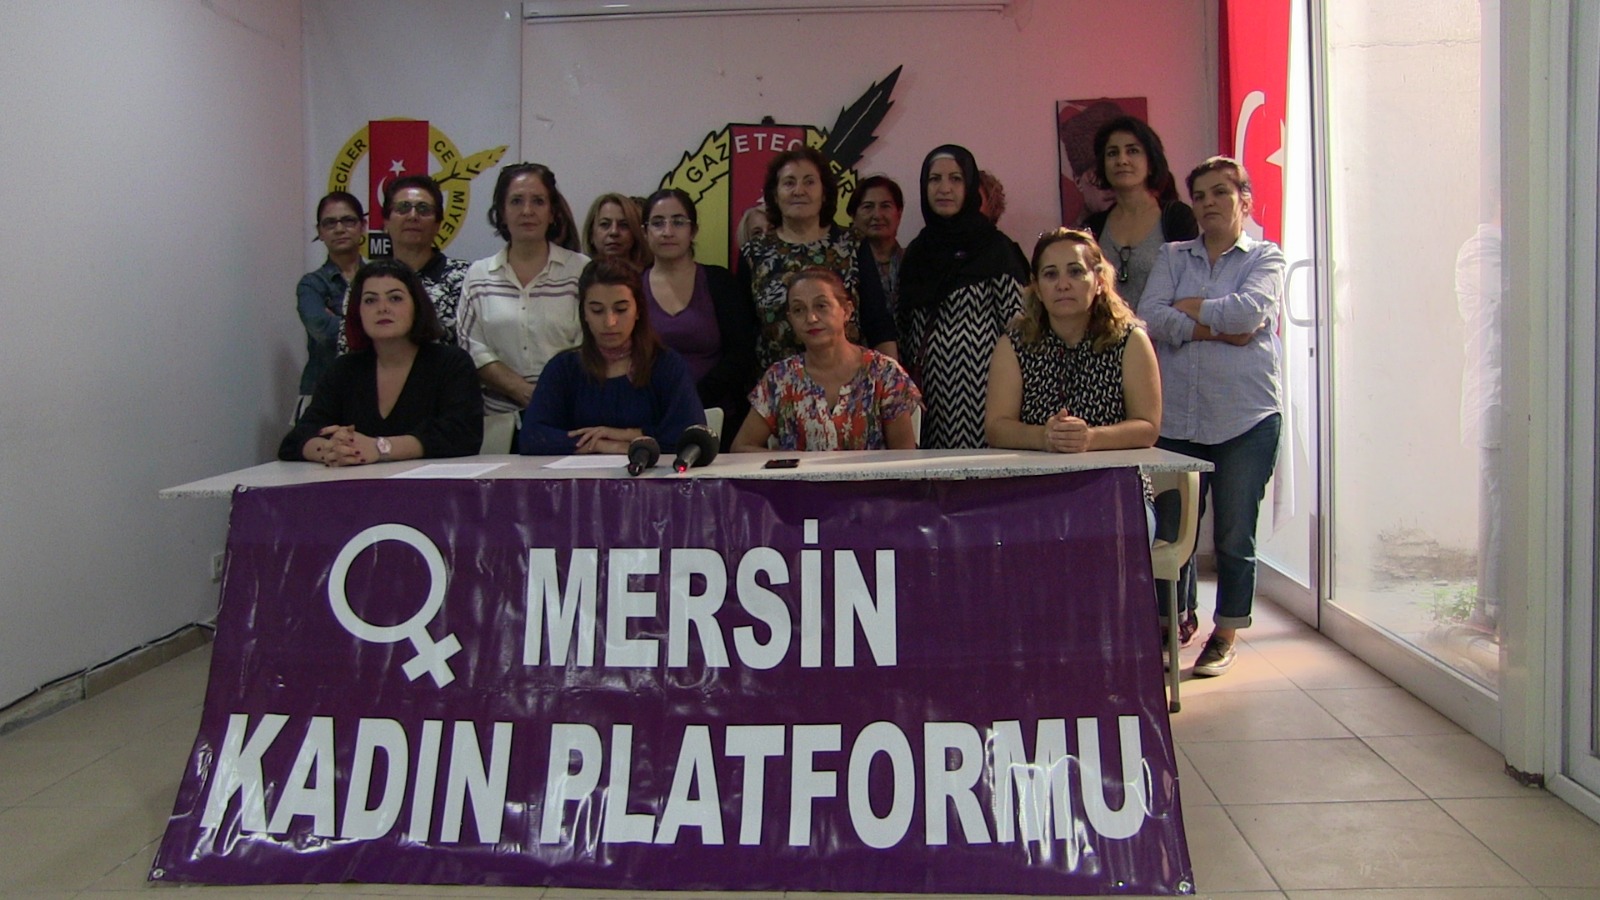 Mersin Kadın Platformu Mezitli Kent Konseyi’ni Uyardı: Kadınların İradesinin Yok Sayılmasına İzin Vermeyeceğiz